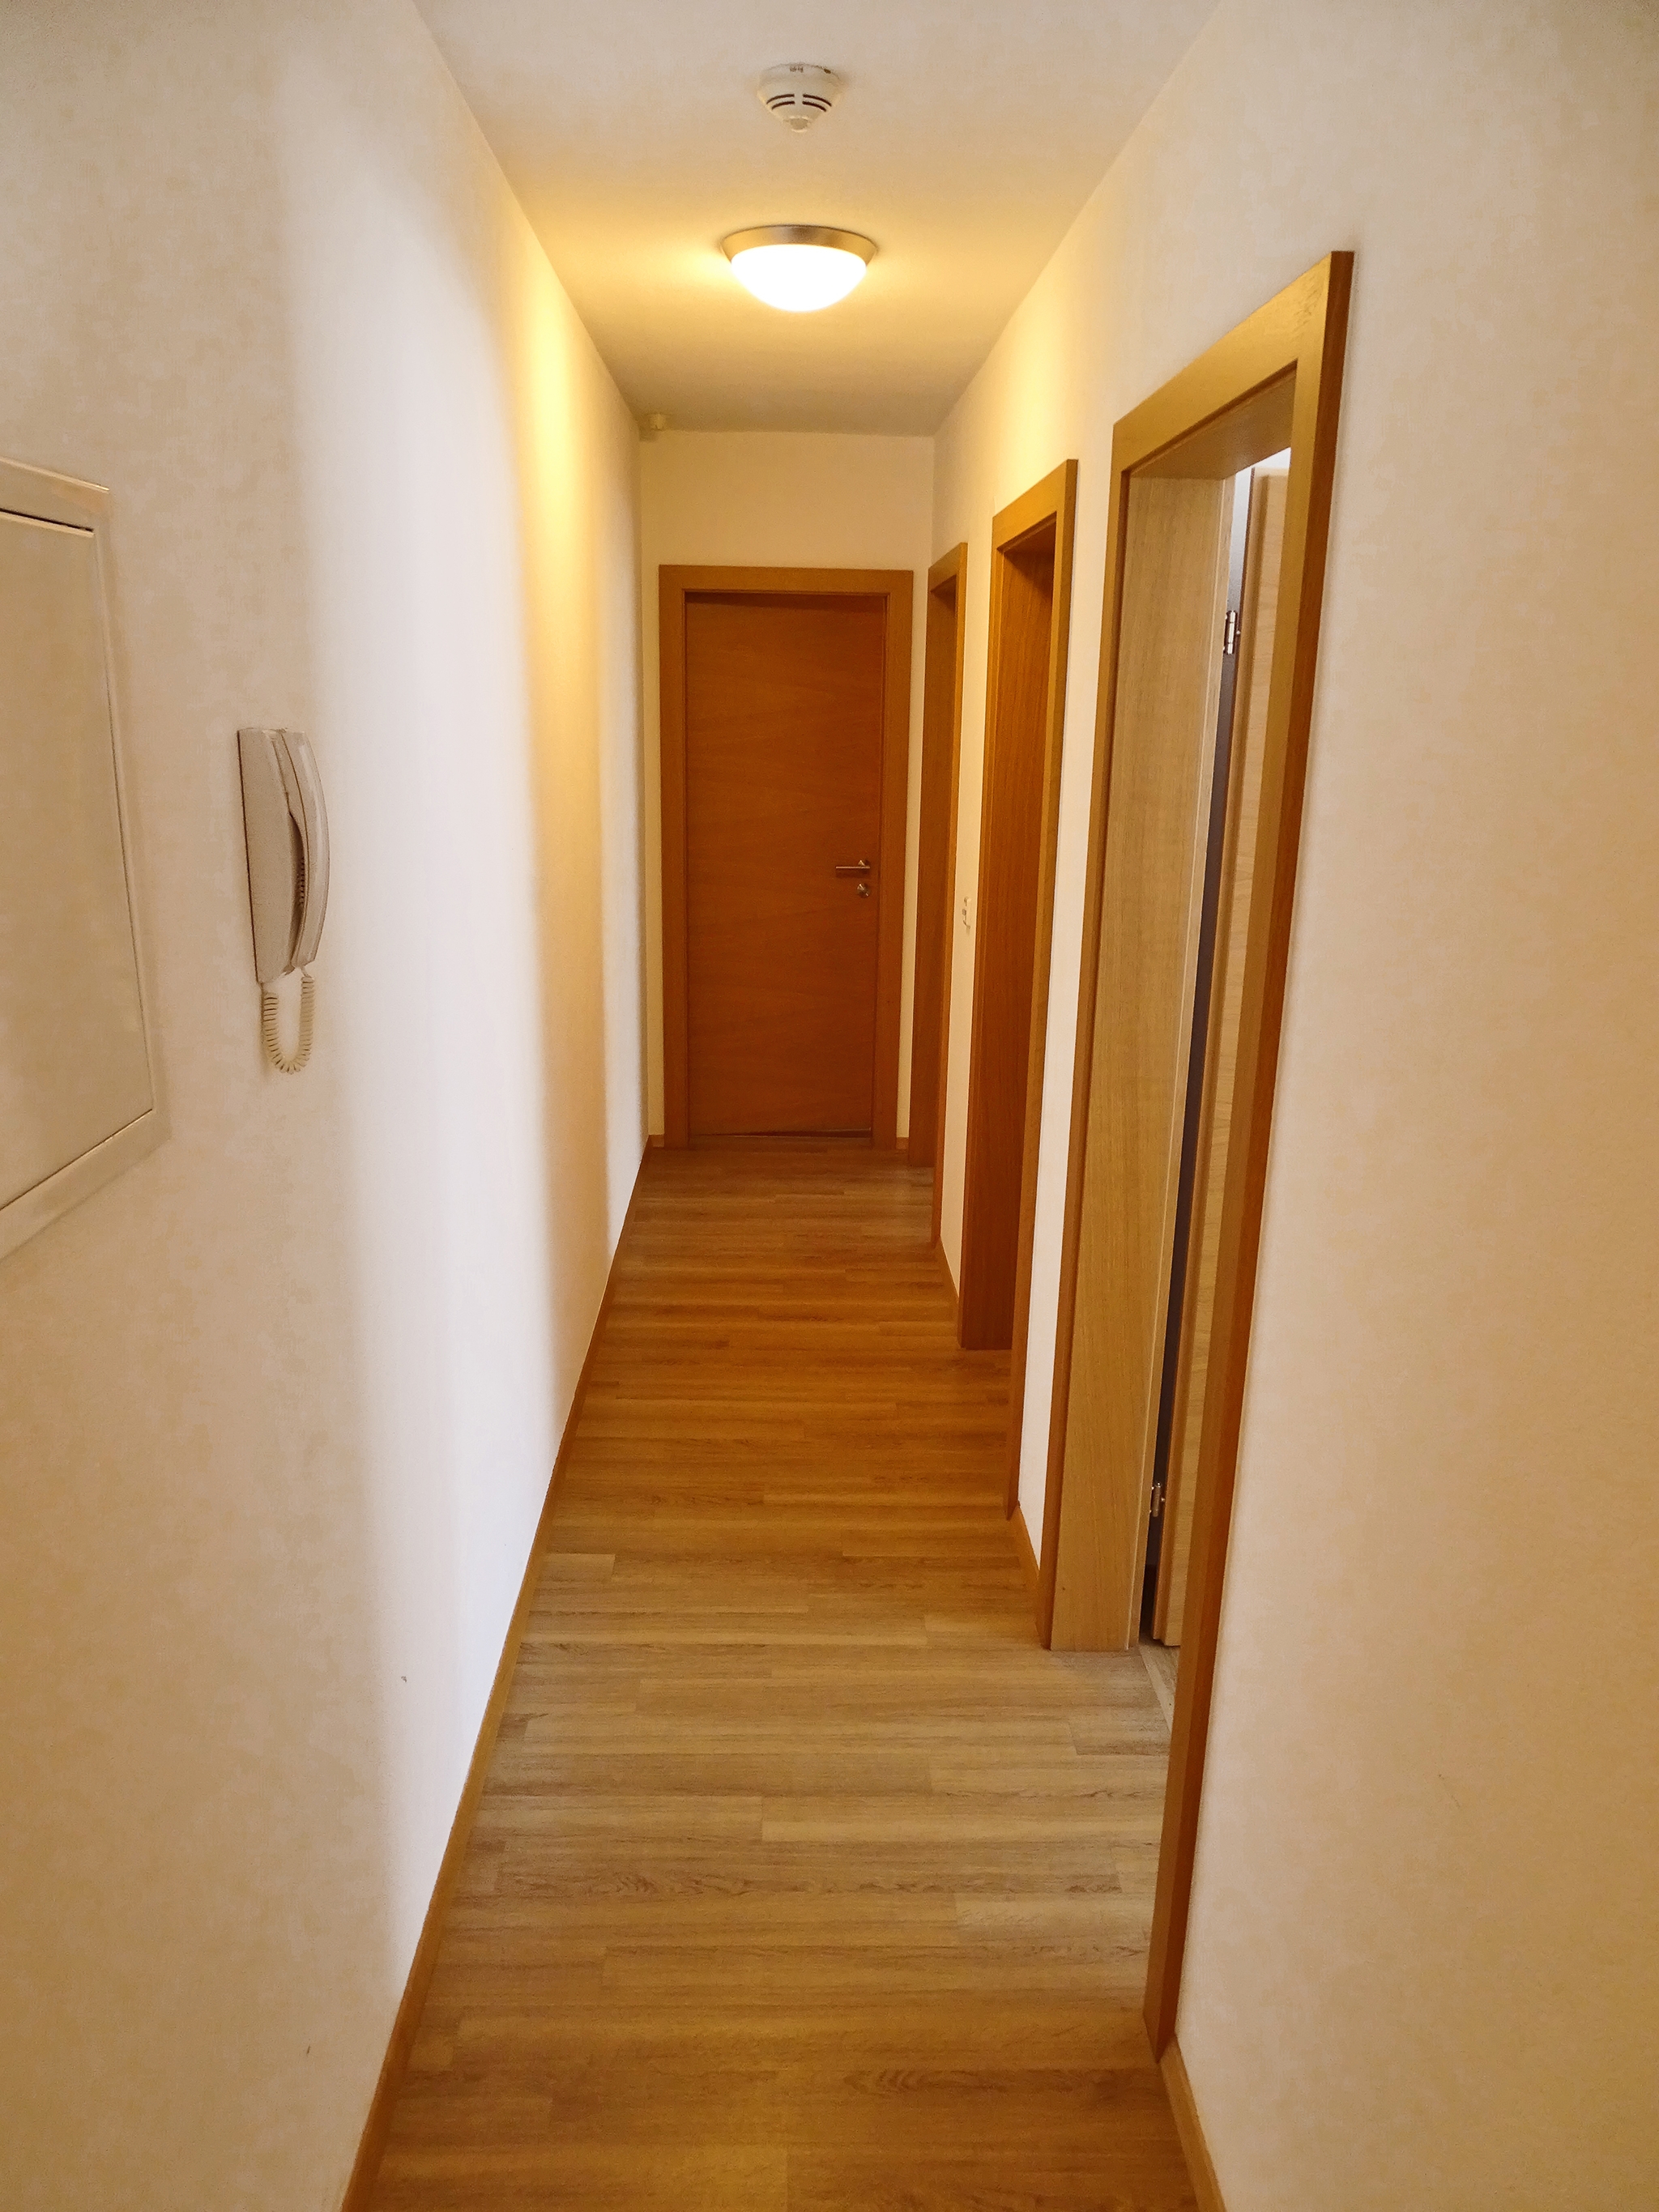 Appartements Windschnur: Appartement Edelweiss Deluxe für 4 Personen - Flurbereich